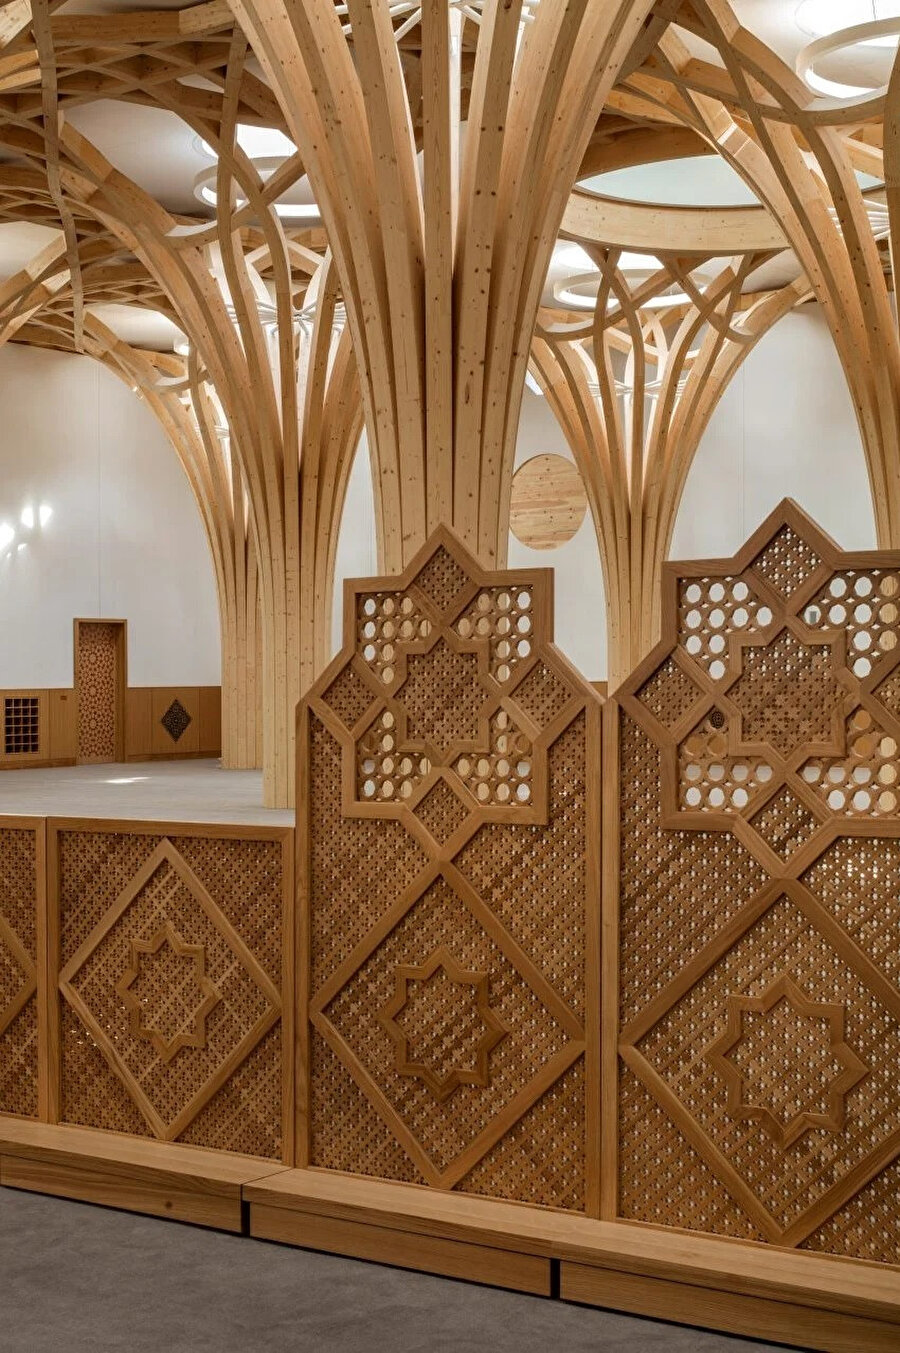 Erkek ve kadın ibadet alanları, İslami geometrik desenlerden oluşan ahşap seperatörlerle ayrılıyor.